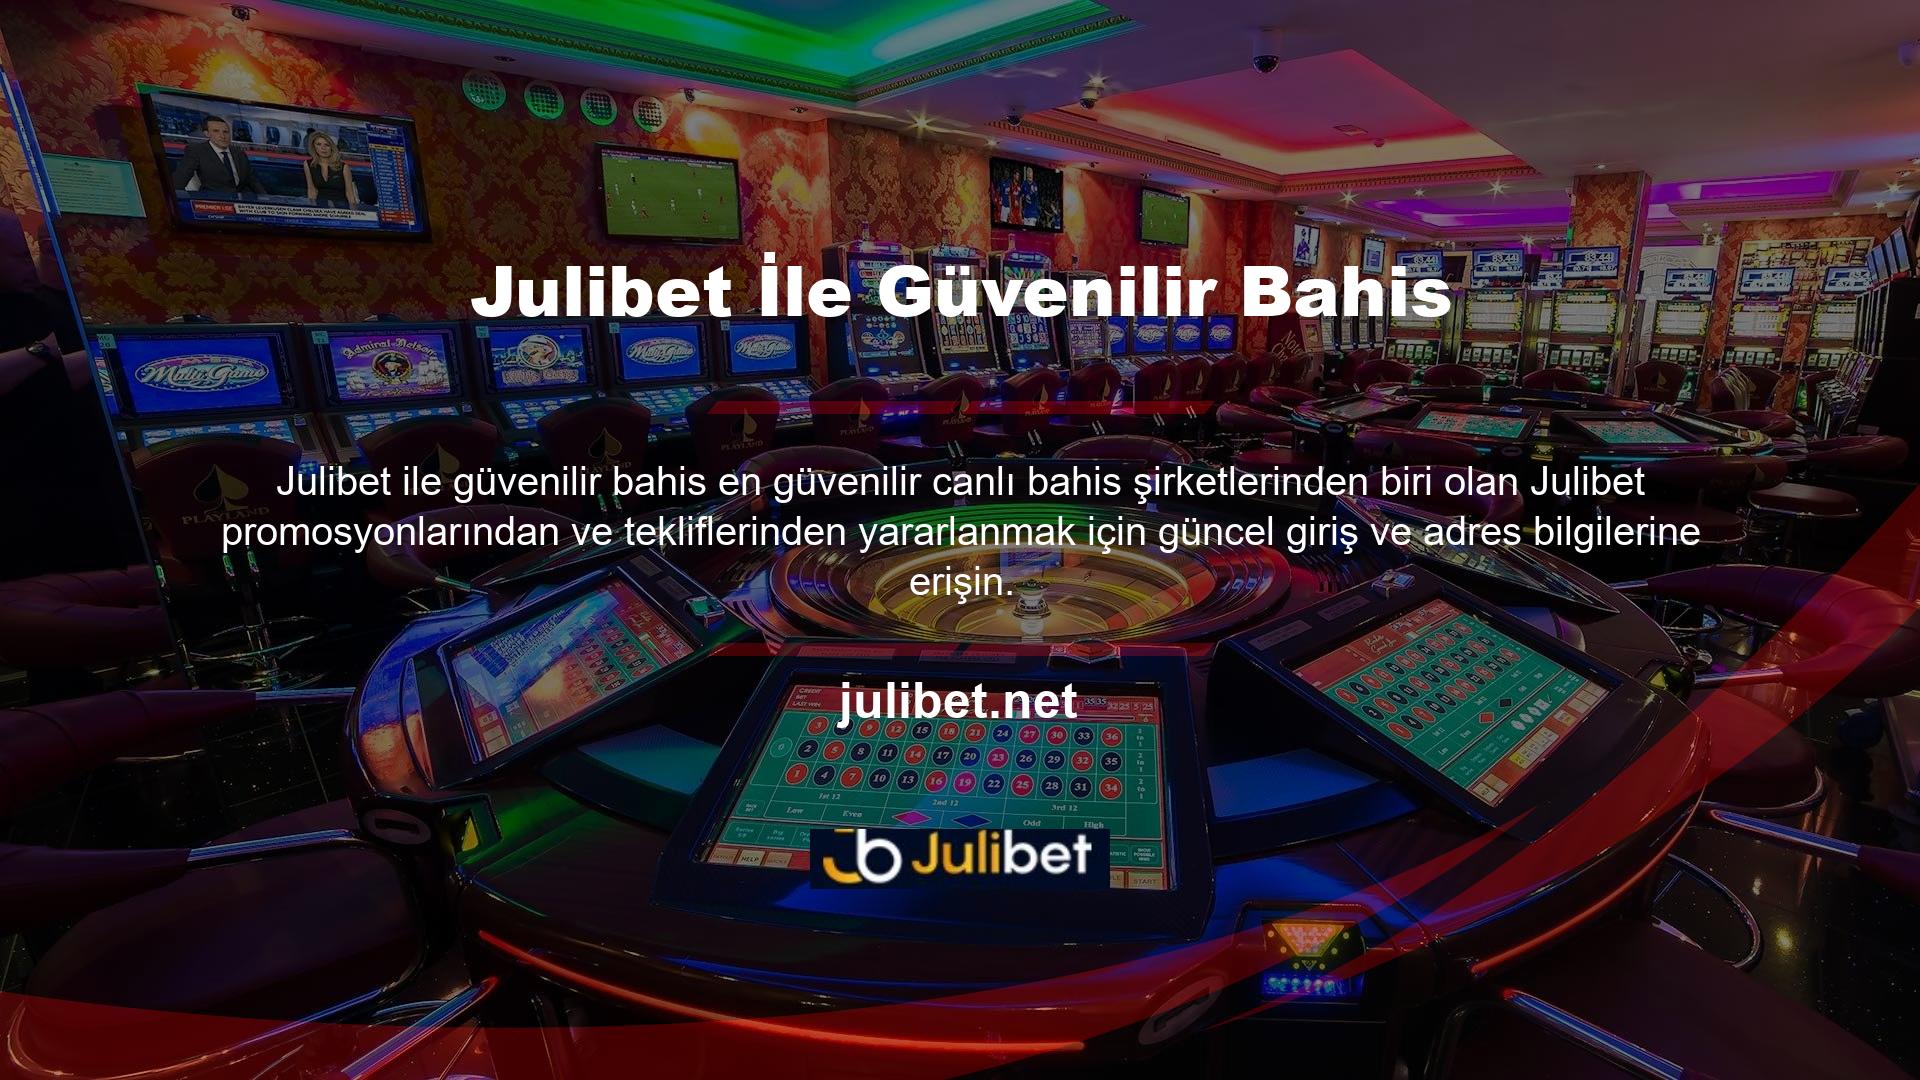 Julibet canlı casino oyunları ihtiyaçlarınızı karşılamak için fazlasıyla yeterli